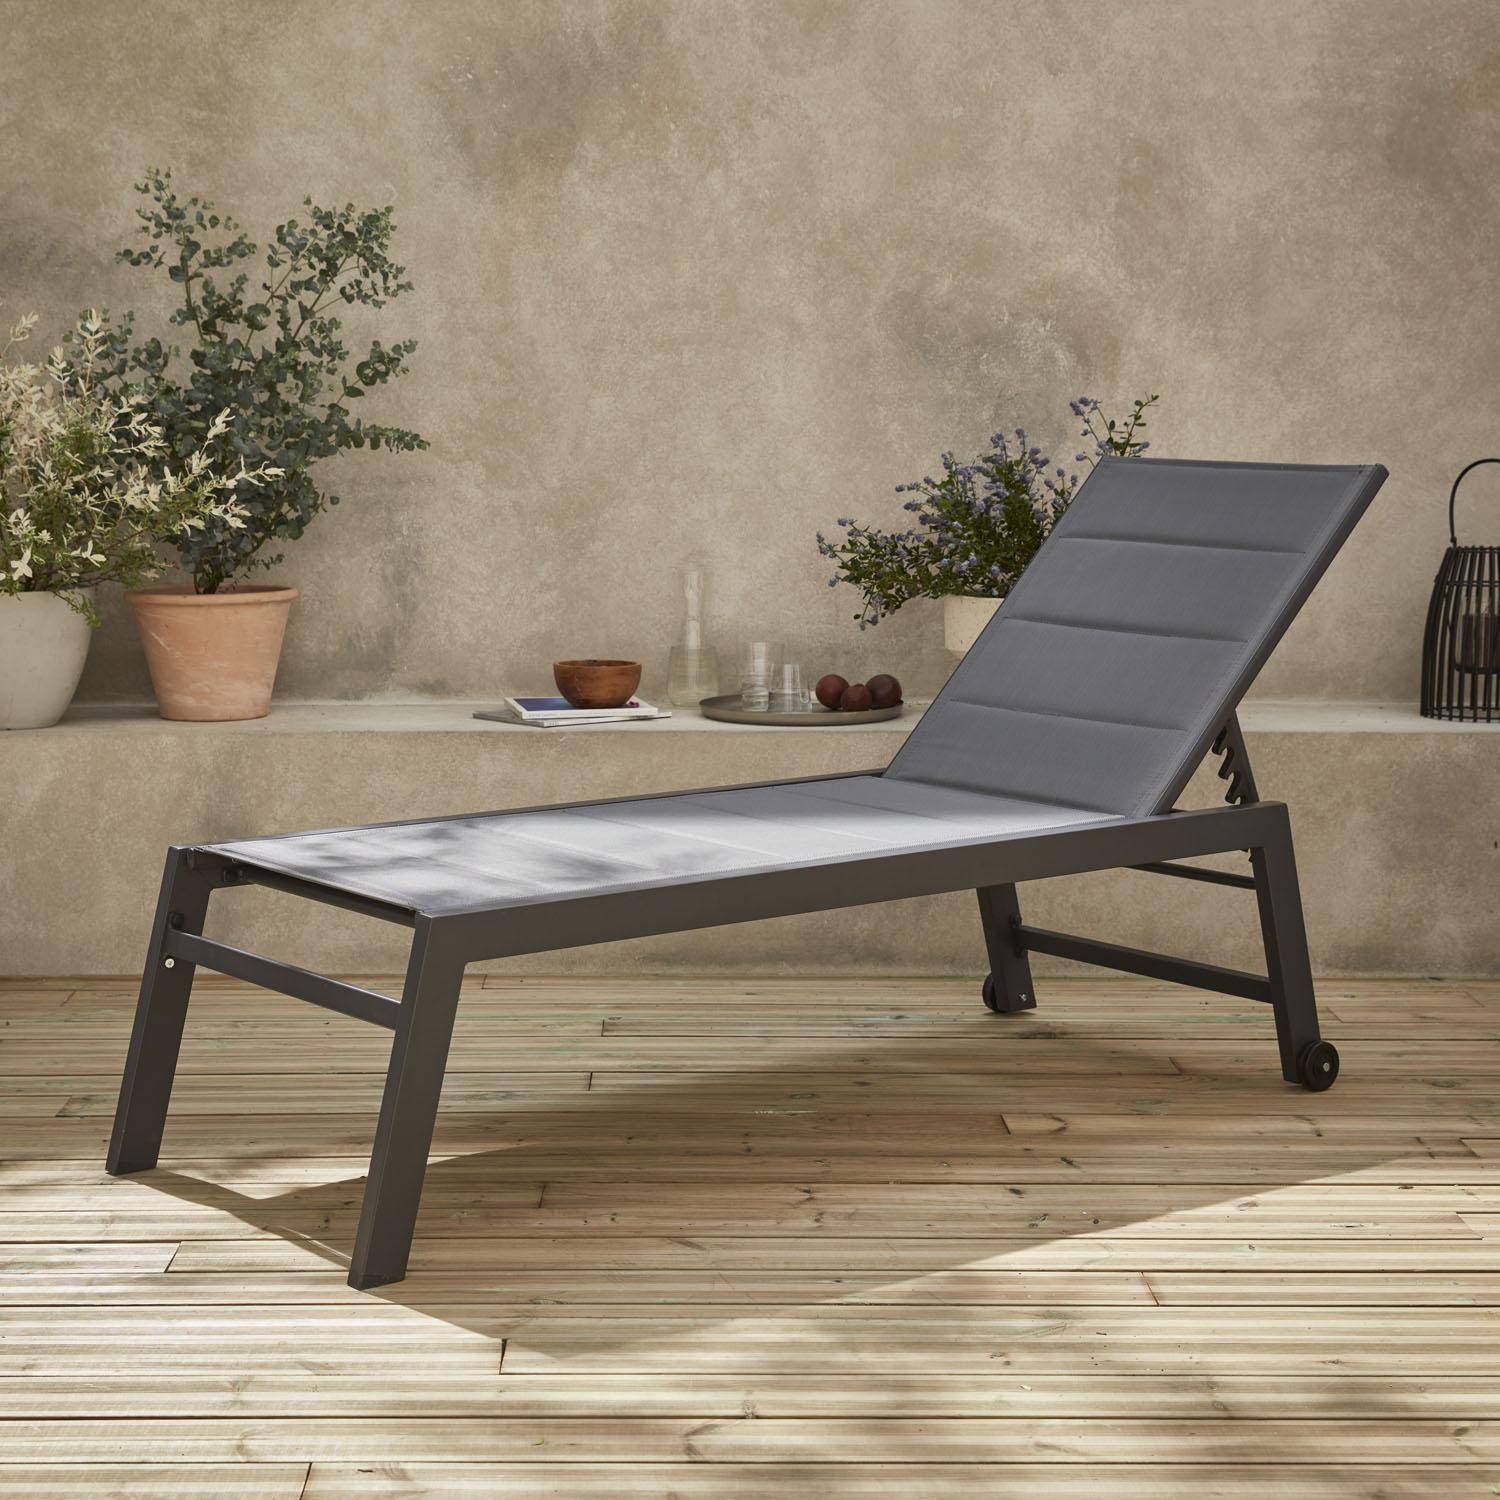 Sonnenliege - Solis - Liegestuhl mit 6 Positionen aus Textilene und Aluminium, anthrazitgraues Gestell, graues Textilene Photo1